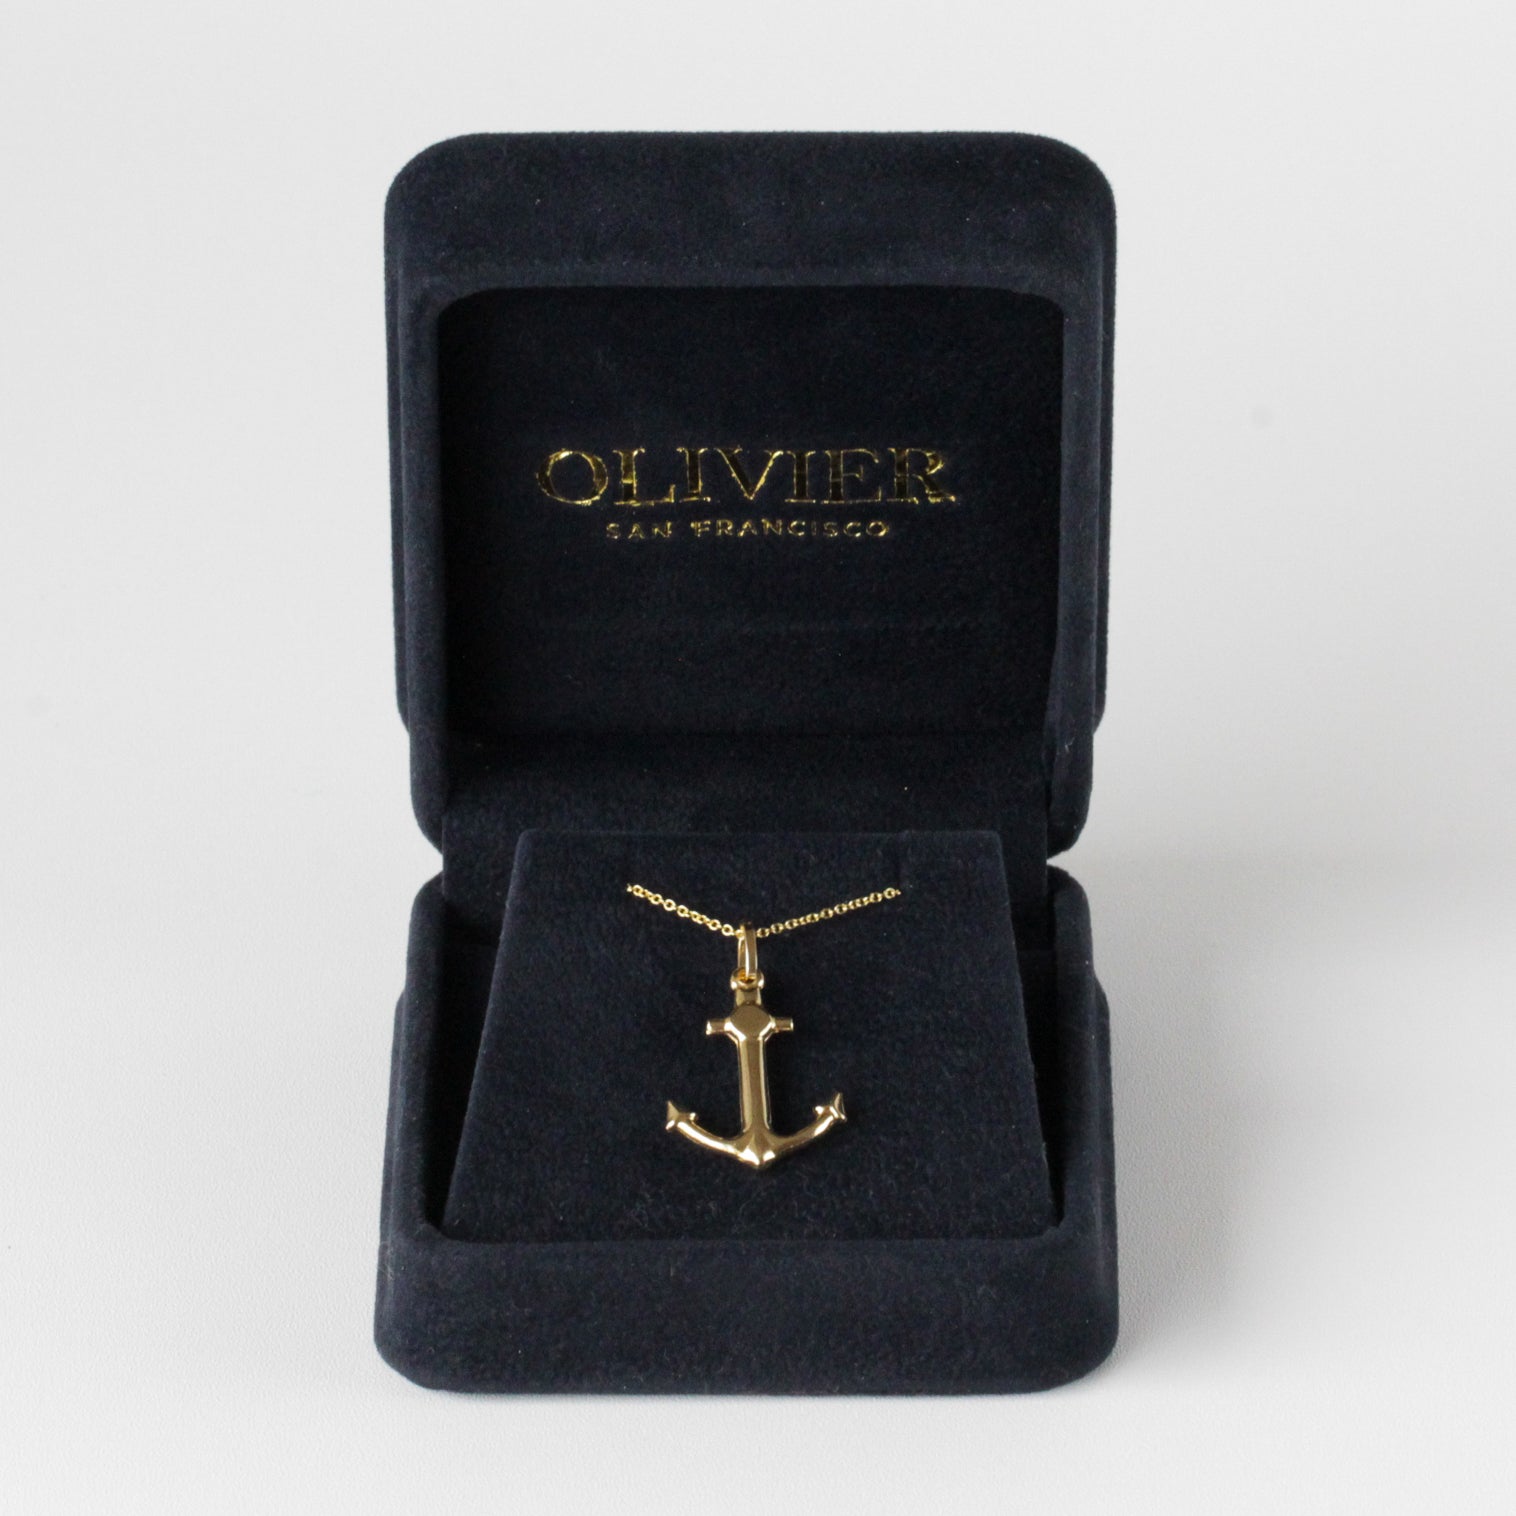 Anchor pendant gold necklace box